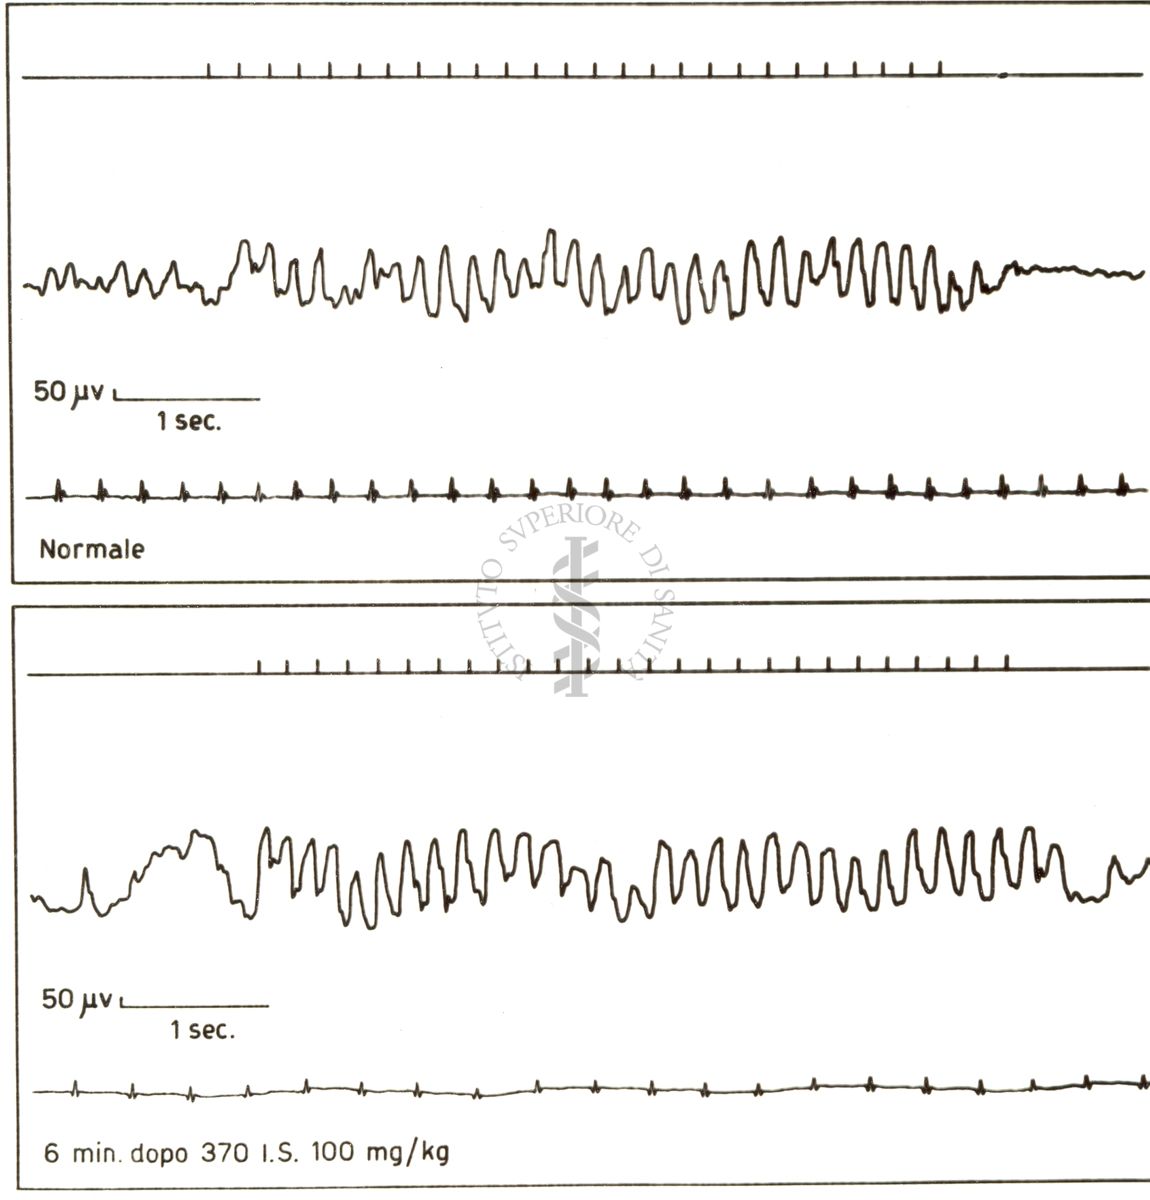 Risposta dell'elettroencefalogramma di coniglio alla stimolazione luminosa prima e dopo il 370 I.S.